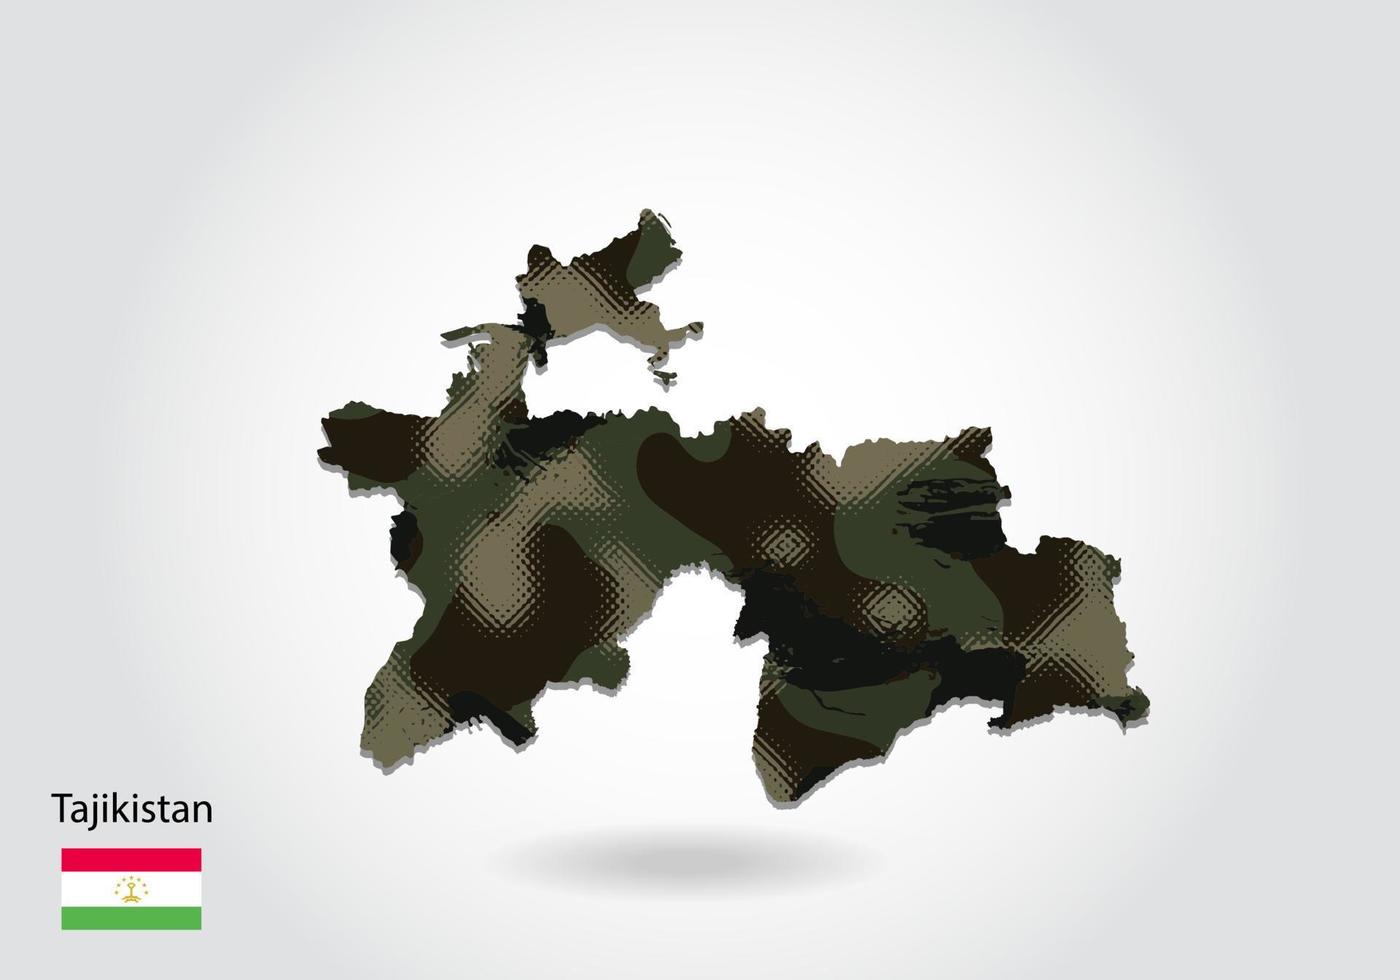 Tadzjikistan kaart met camouflage patroon, bos - groene textuur in kaart. militair concept voor leger, soldaat en oorlog. wapenschild, vlag. vector